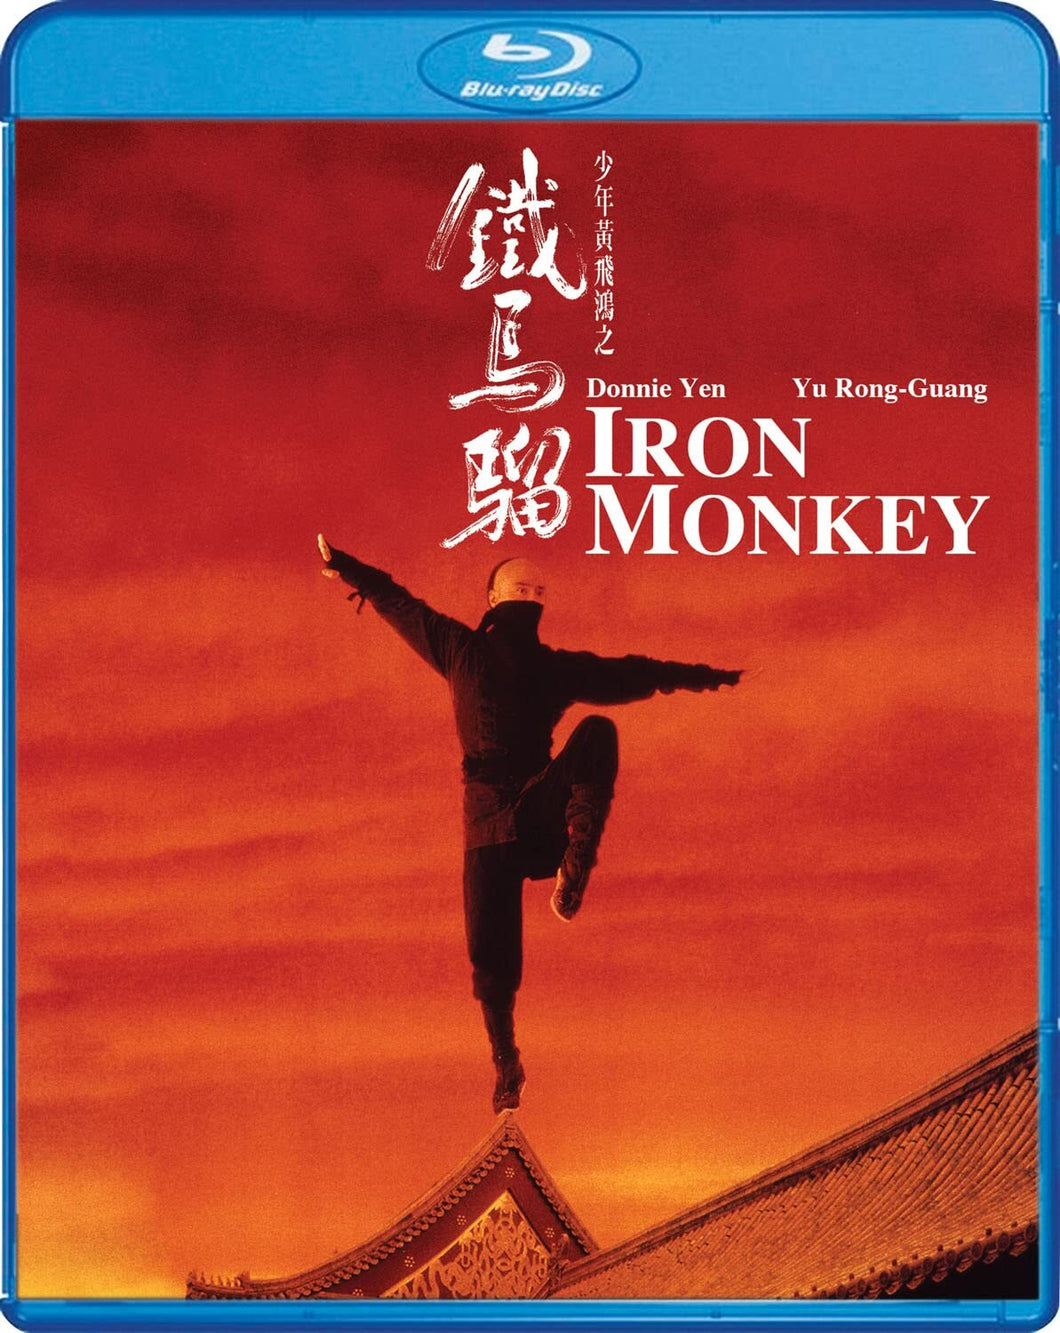 Iron Monkey (1993) de Woo-Ping Yuen - front cover